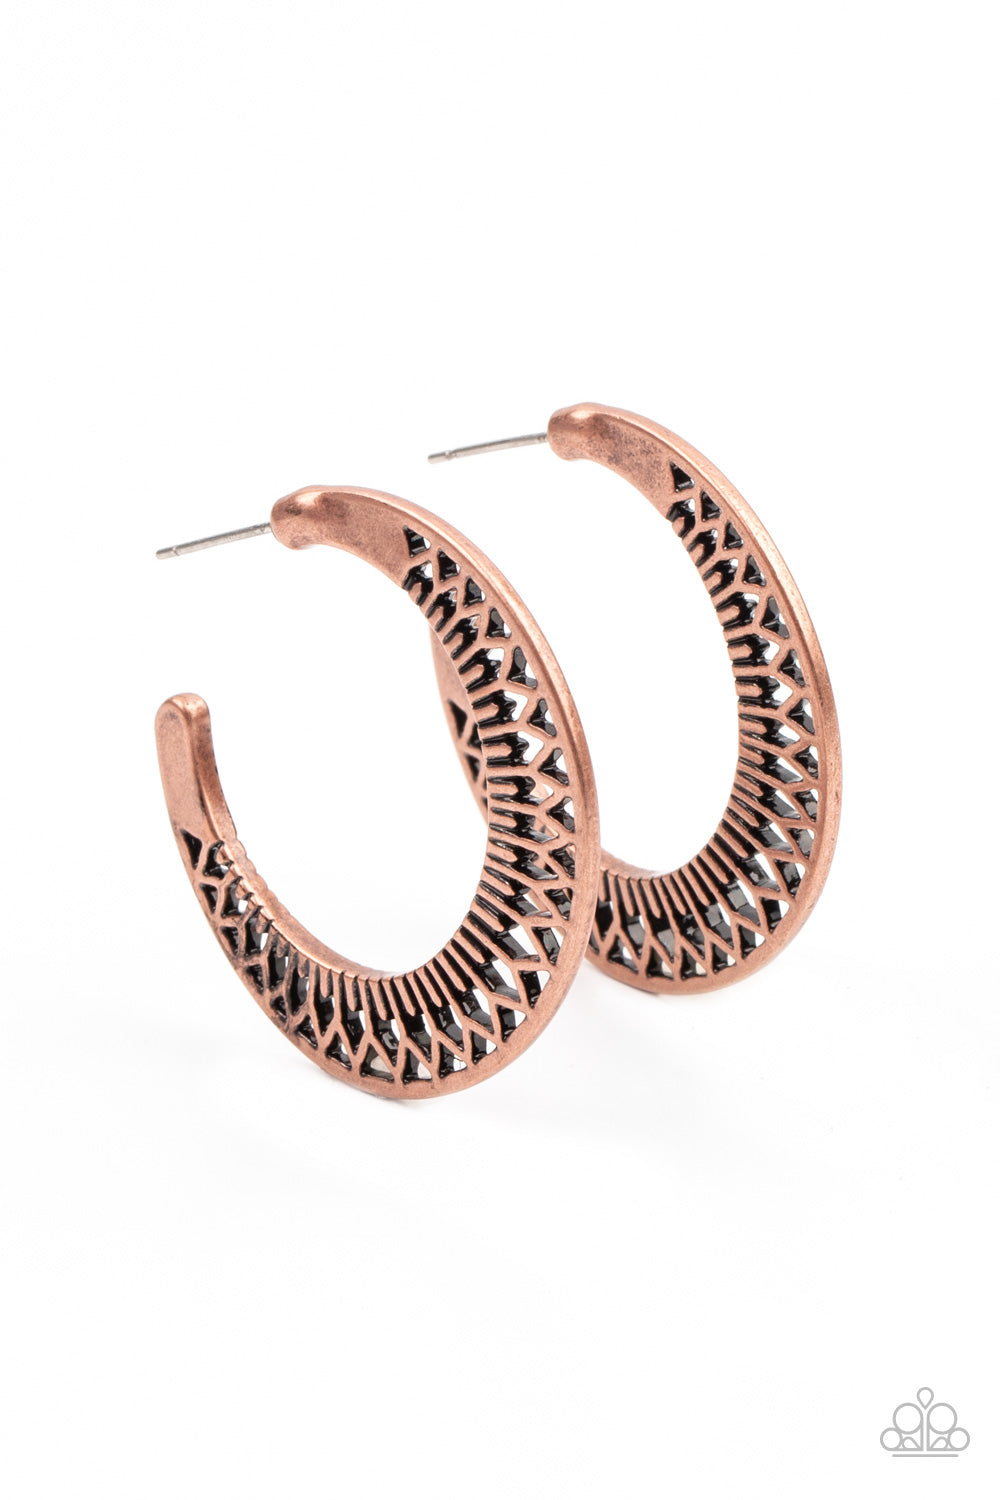 Bada BLOOM! - Copper Hoop Earrings - Princess Glam Shop